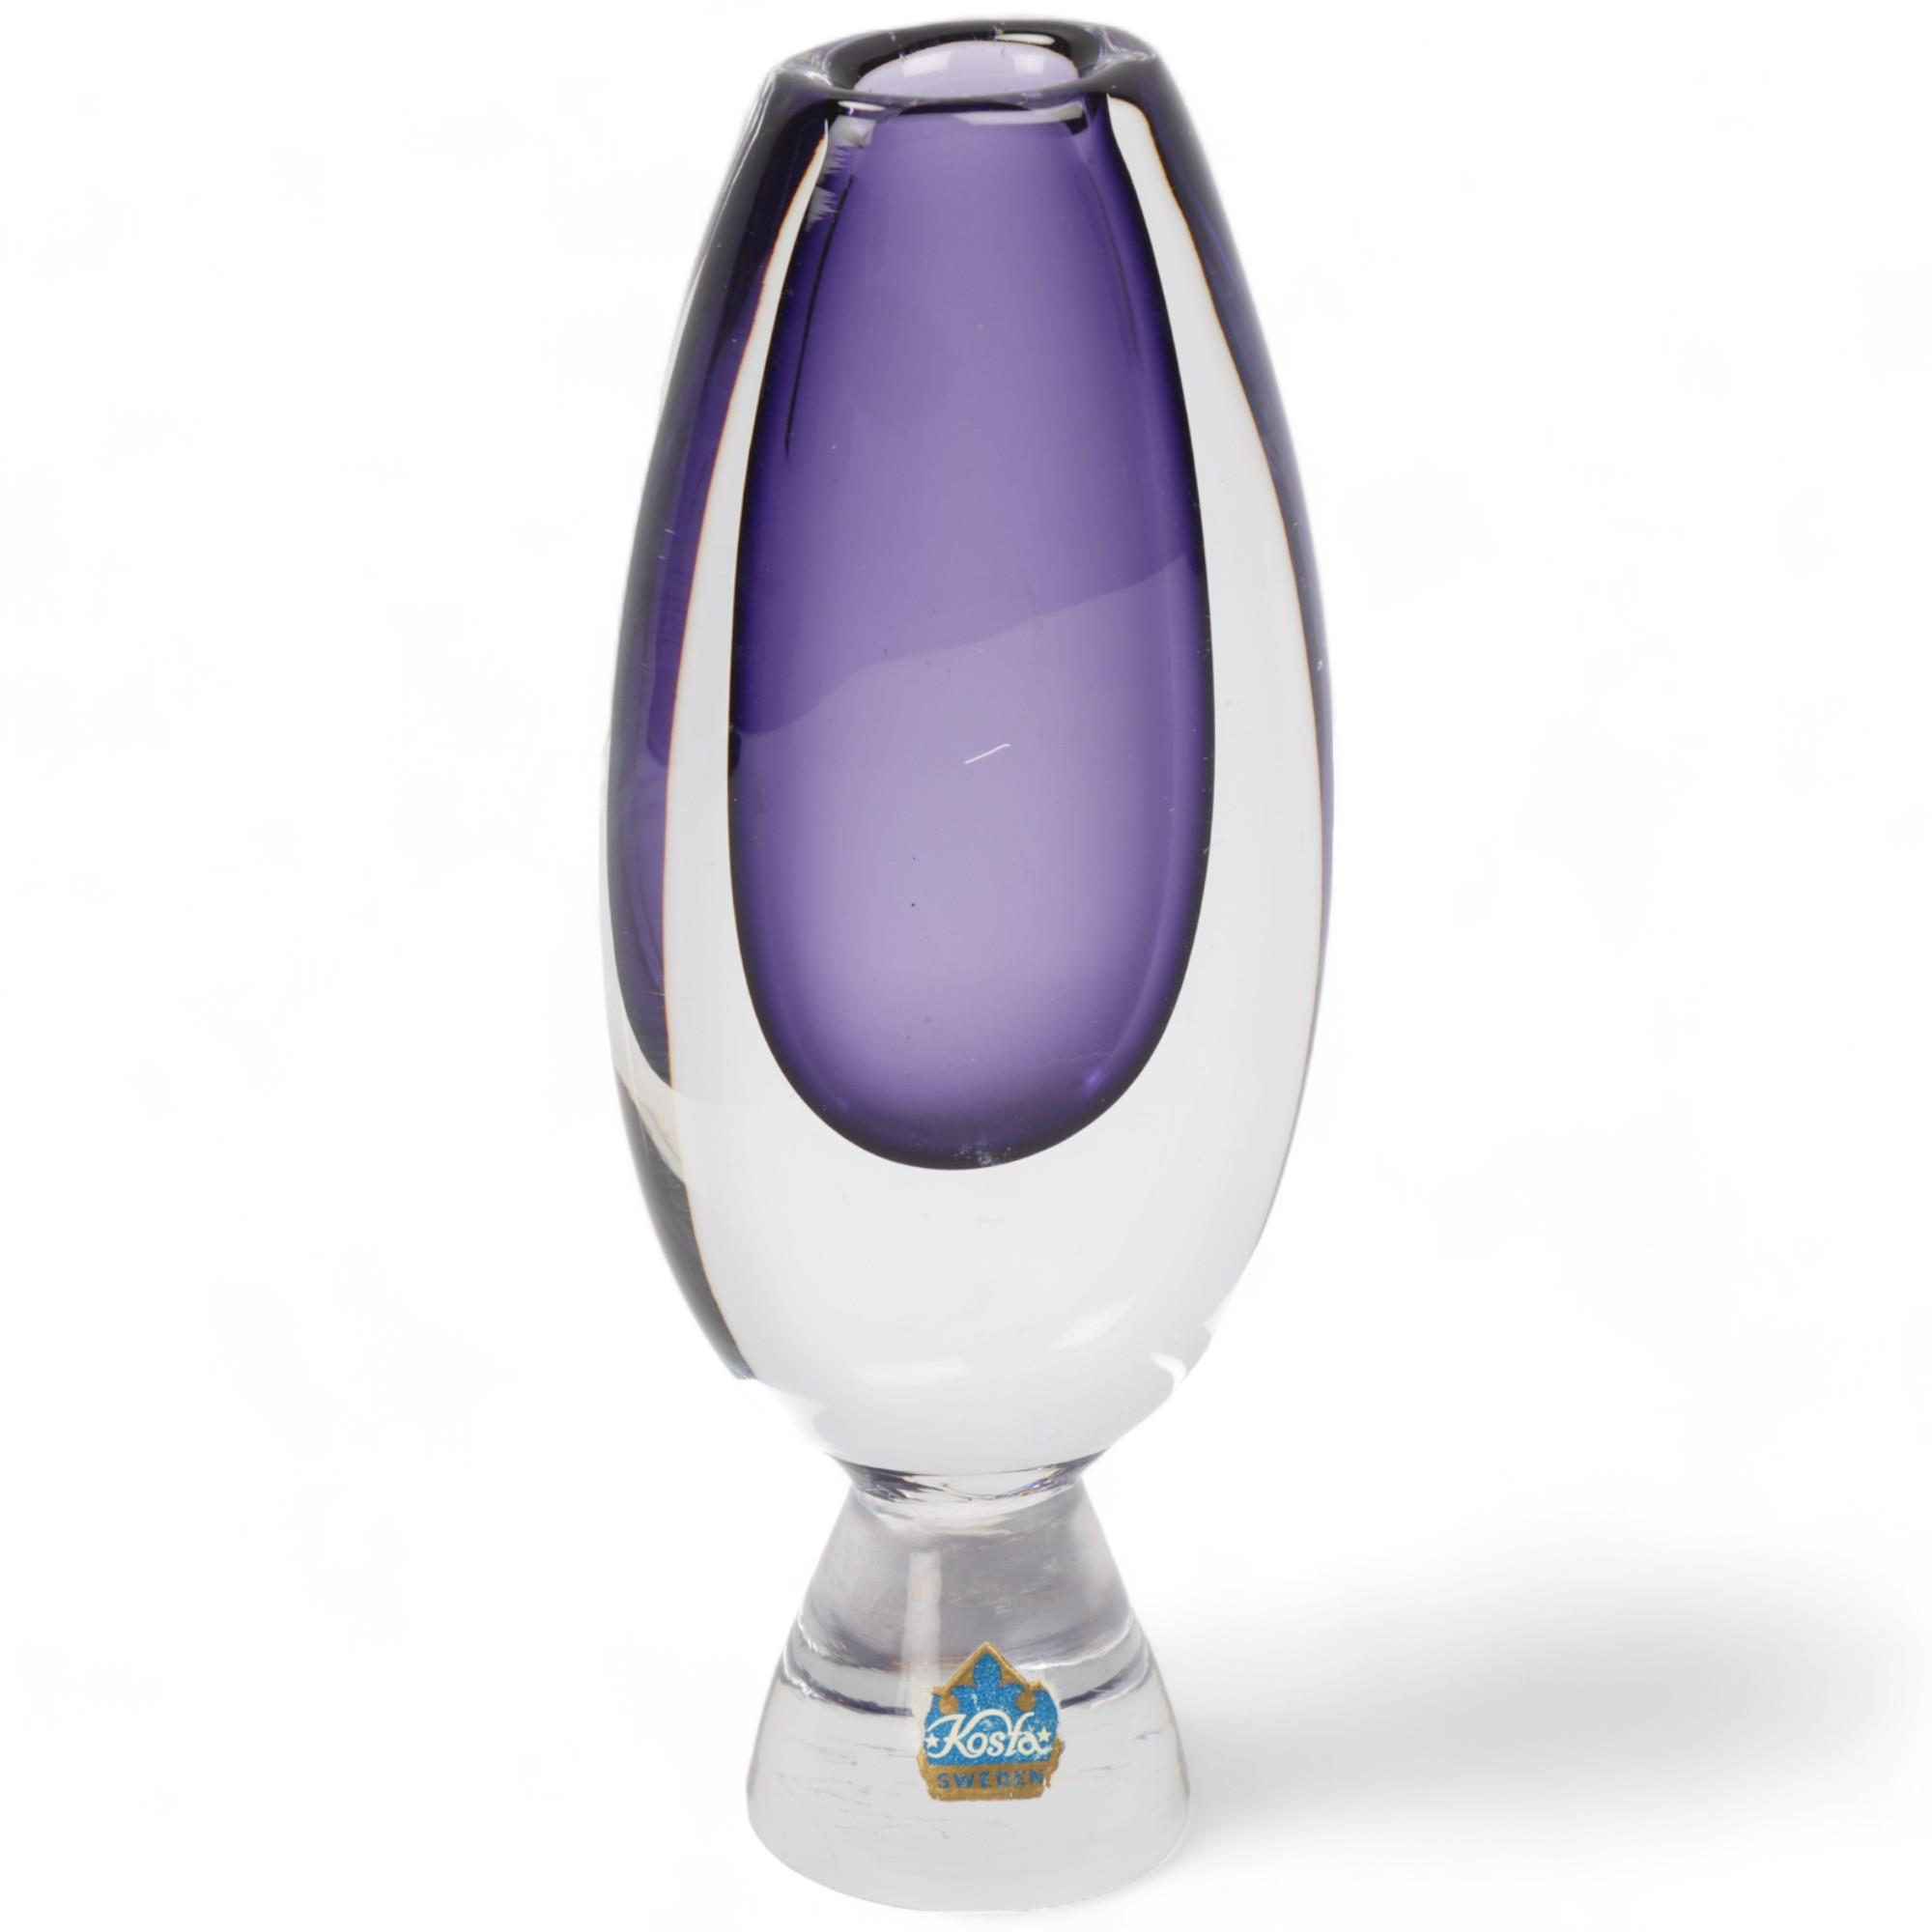 VICKE LINDSTRAND for Kosta, a 1958 designed violet bud vase on conical plinth Signed Kosta LH